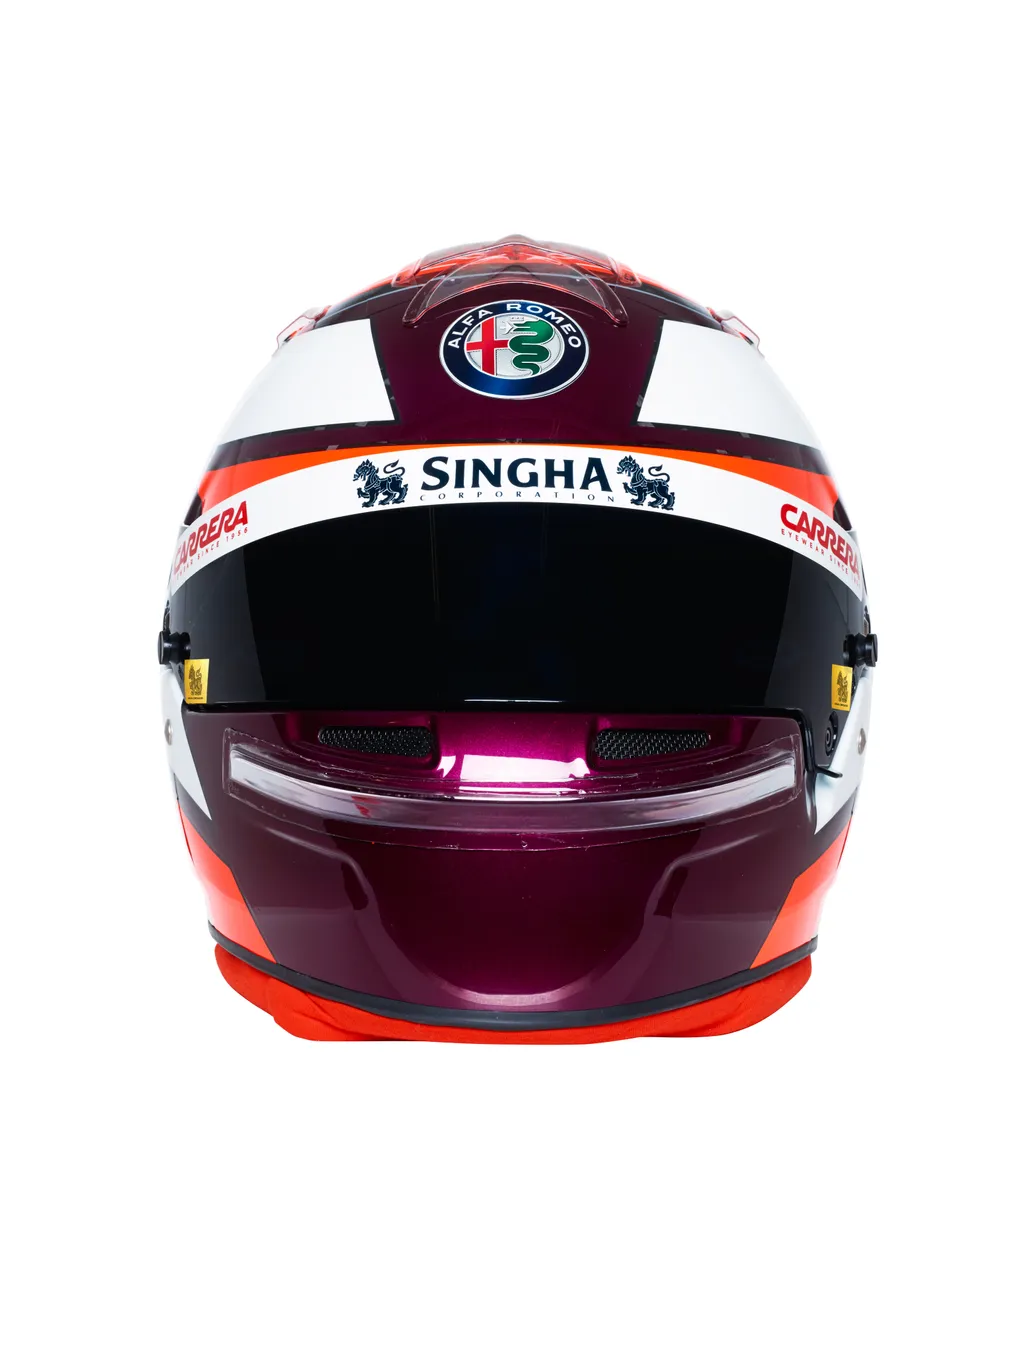 Forma-1, Alfa Romeo Racing, Kimi Räikkönen, sisak 